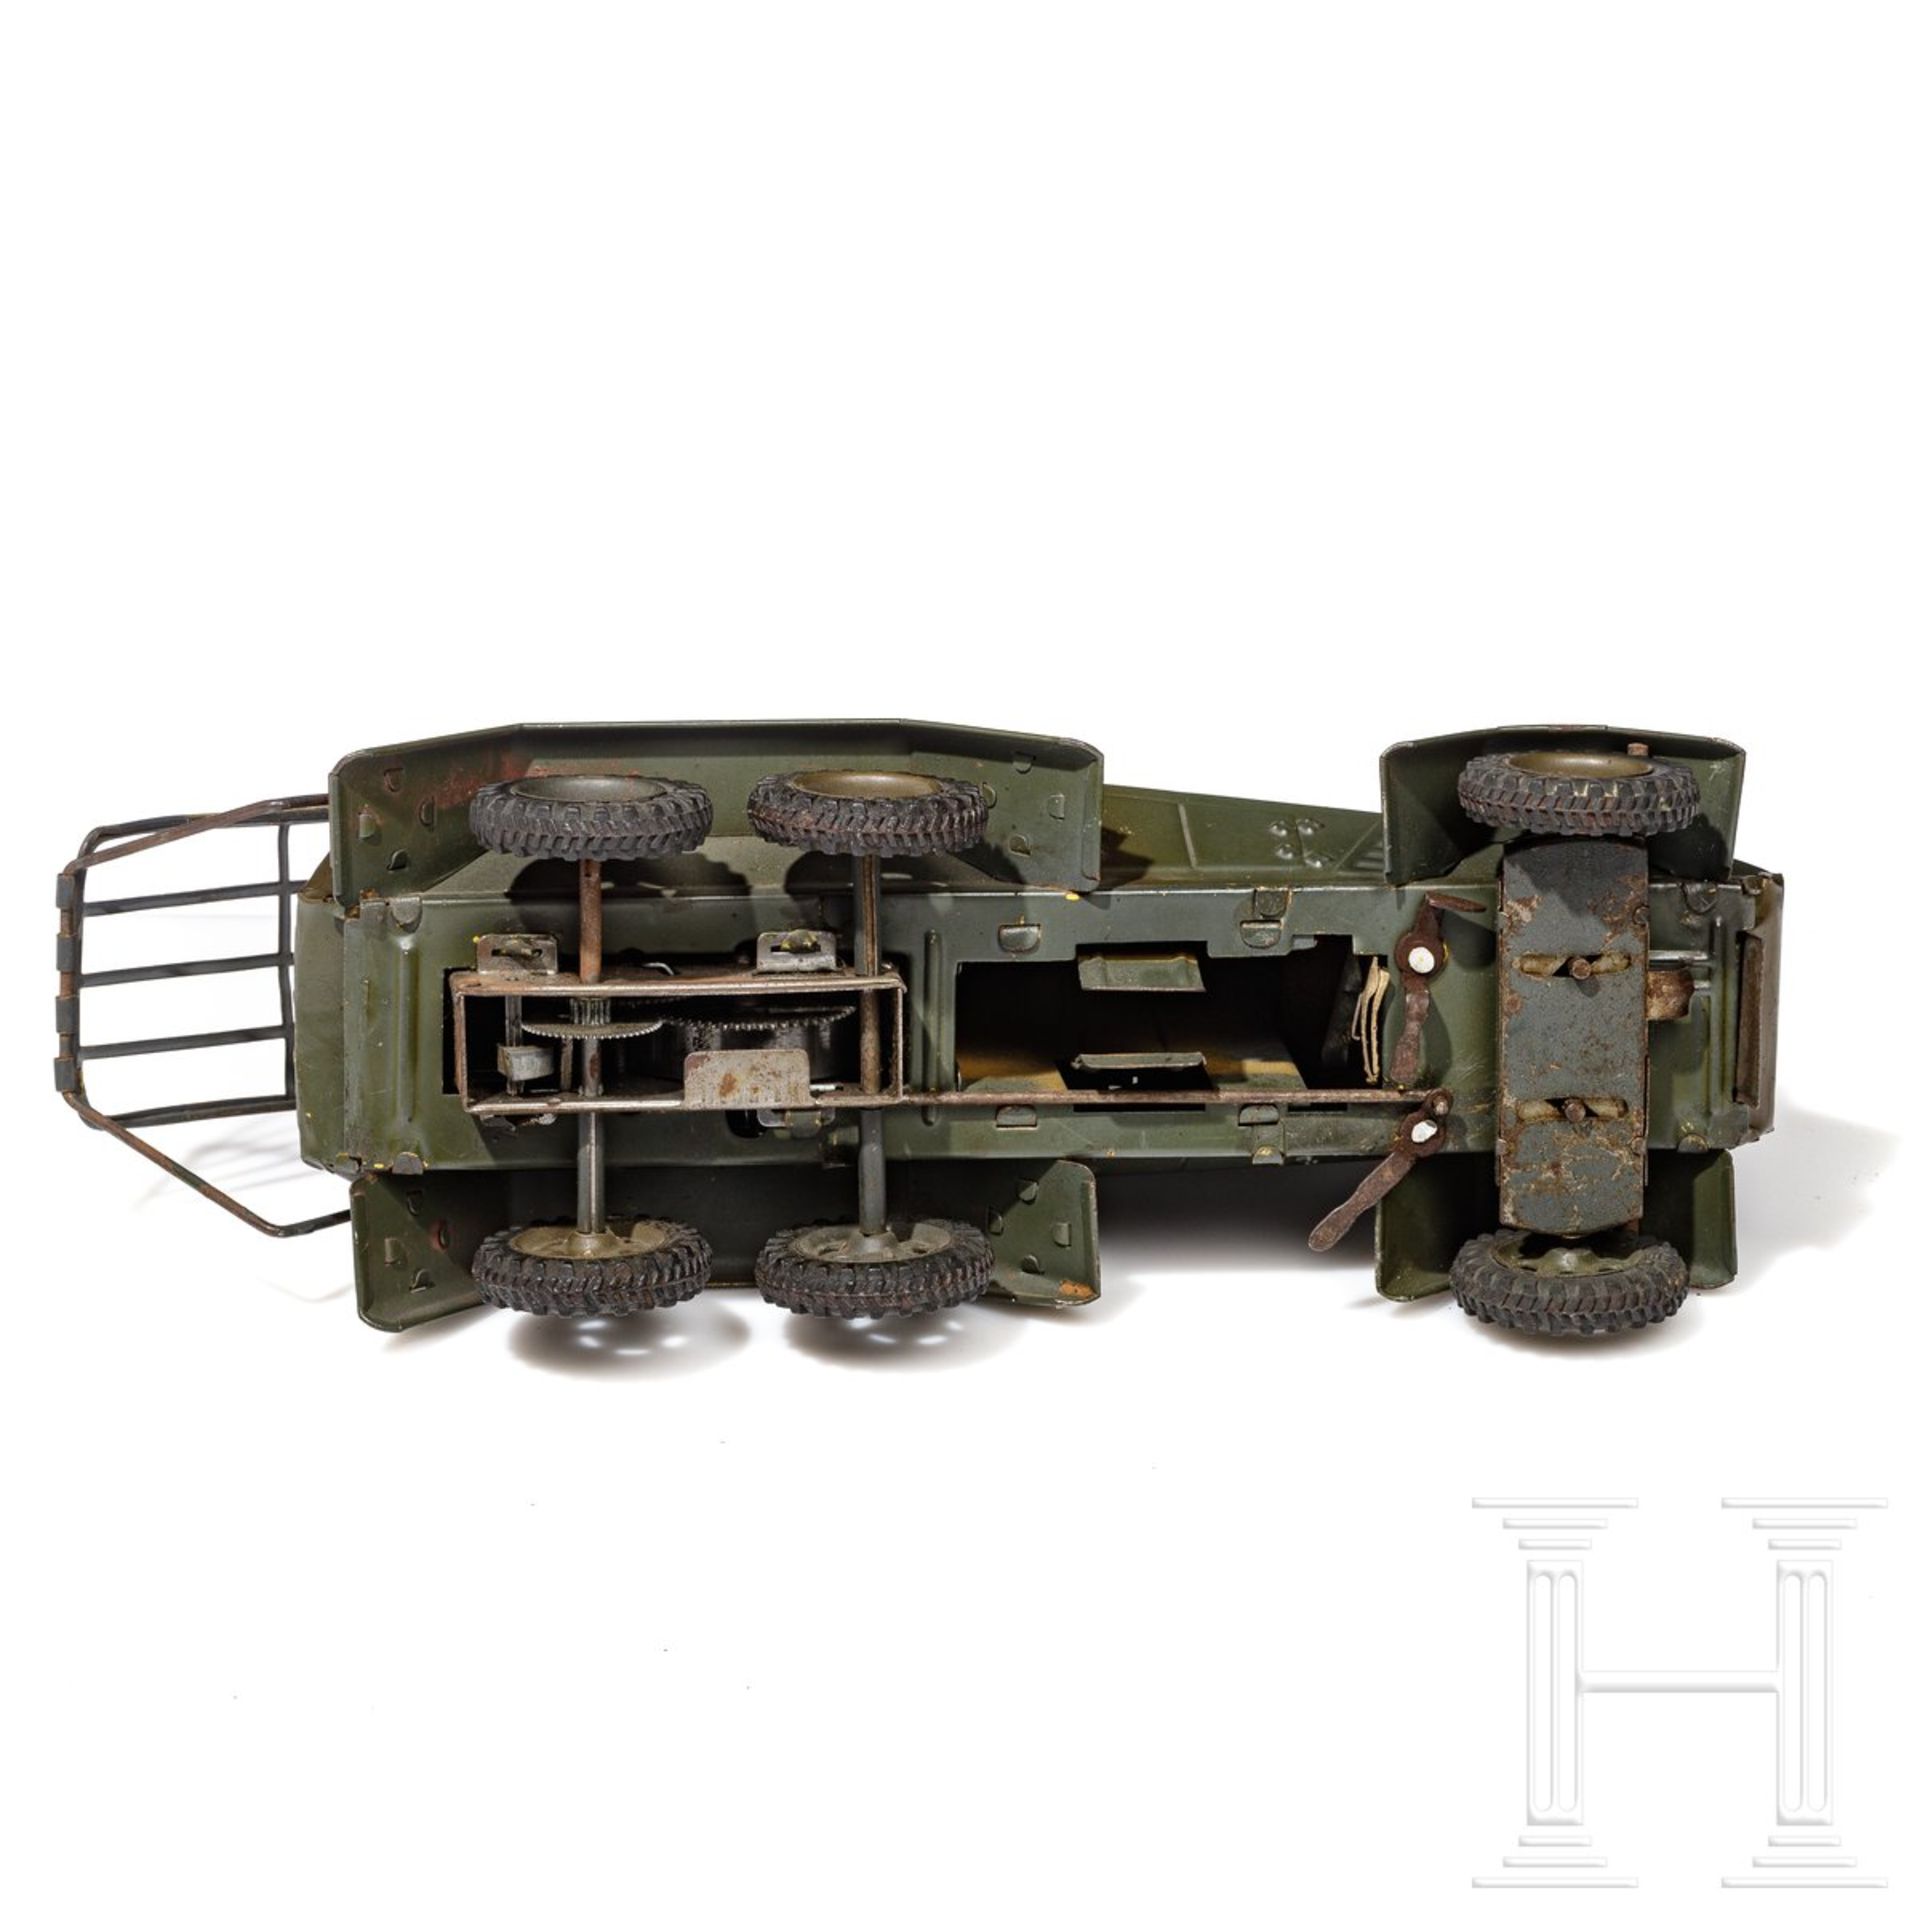 Lineol-Panzerspähwagen 1211 in grau mit Kennzeichen WH 5175 - Bild 3 aus 3